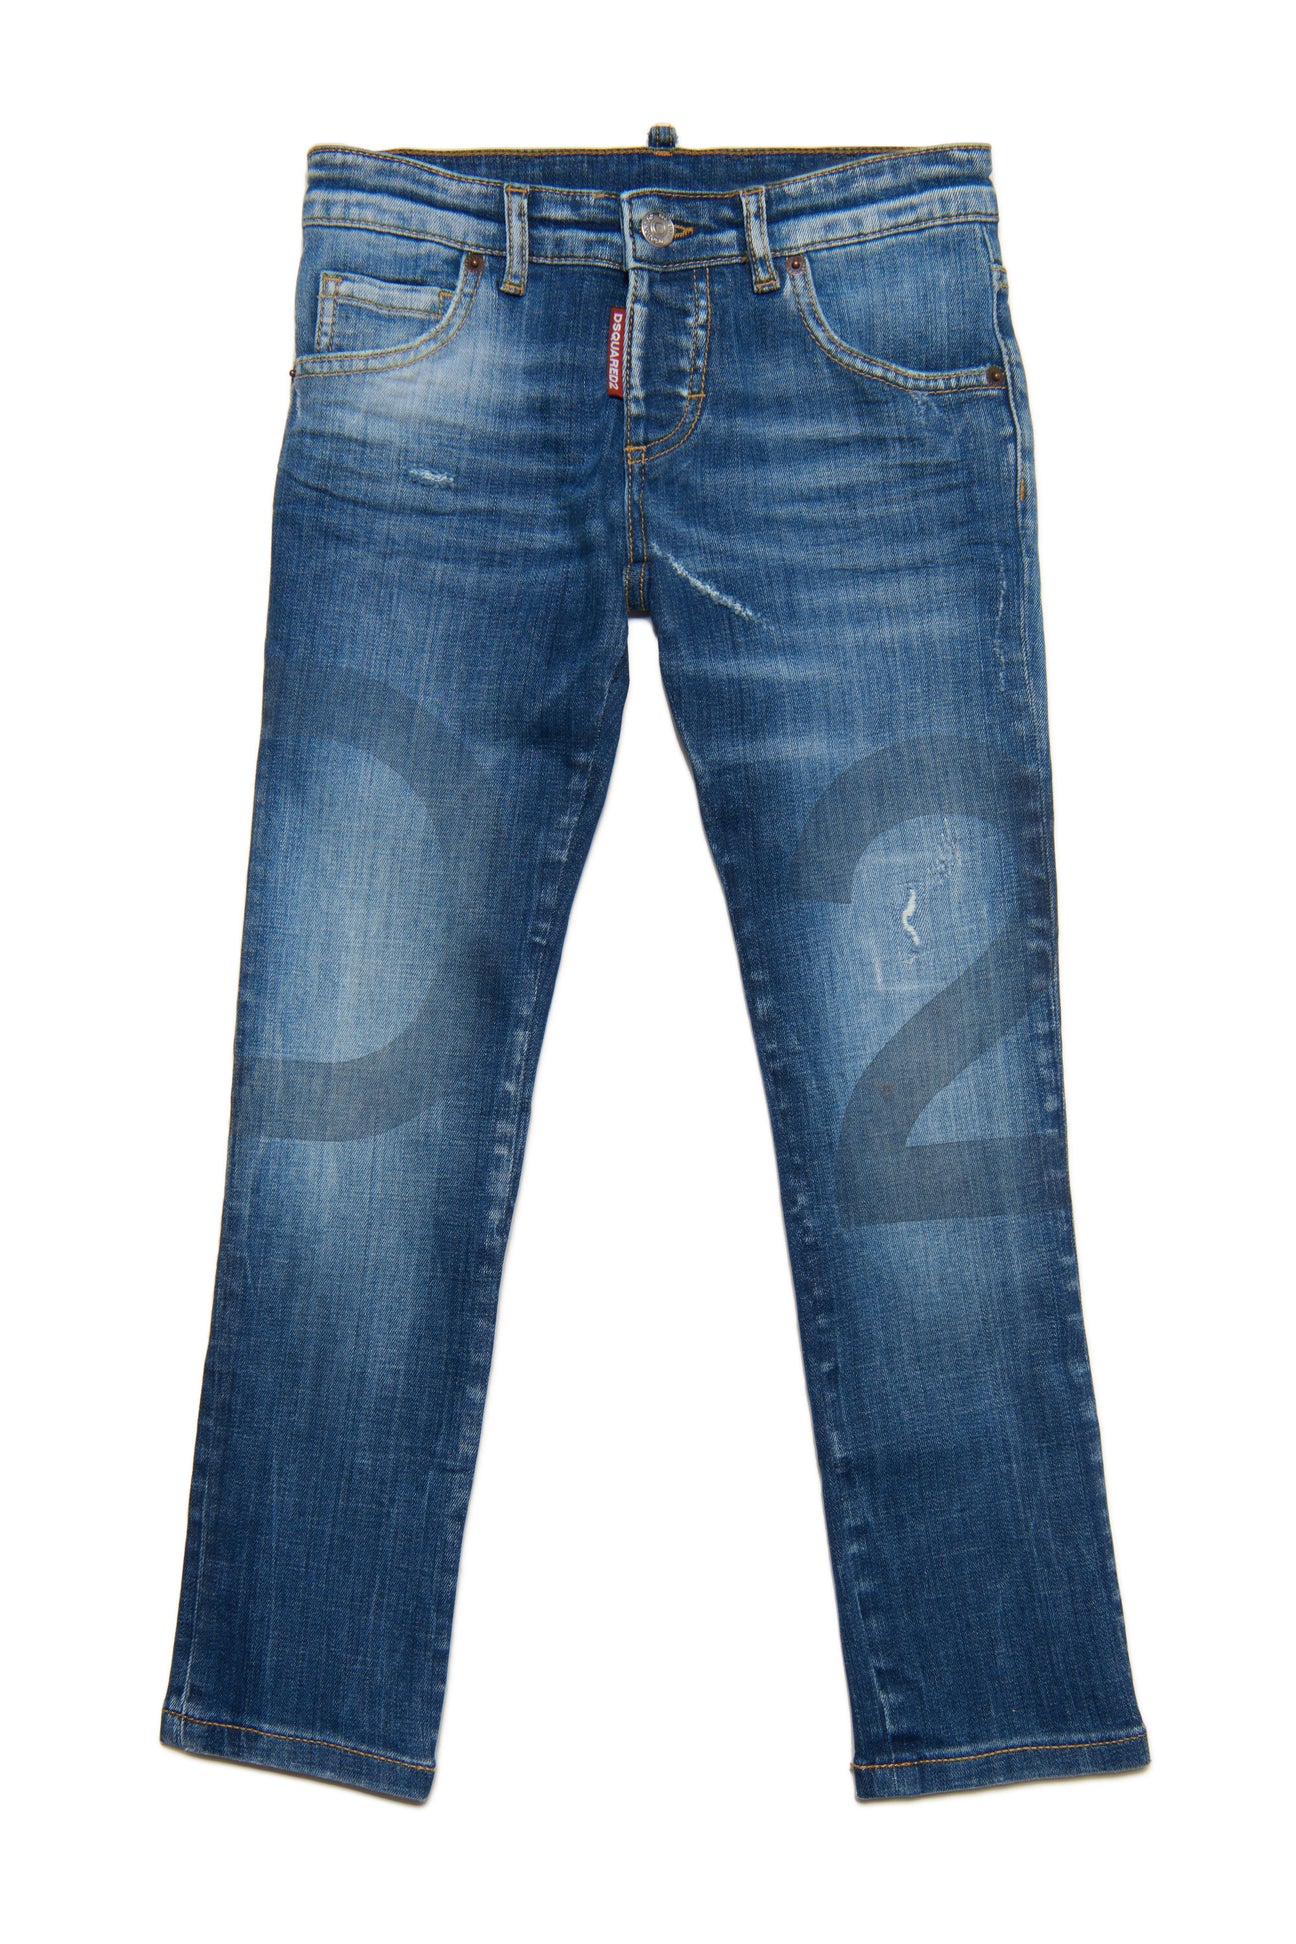 Jeans Clement straight blu medio sfumato con abrasioni 